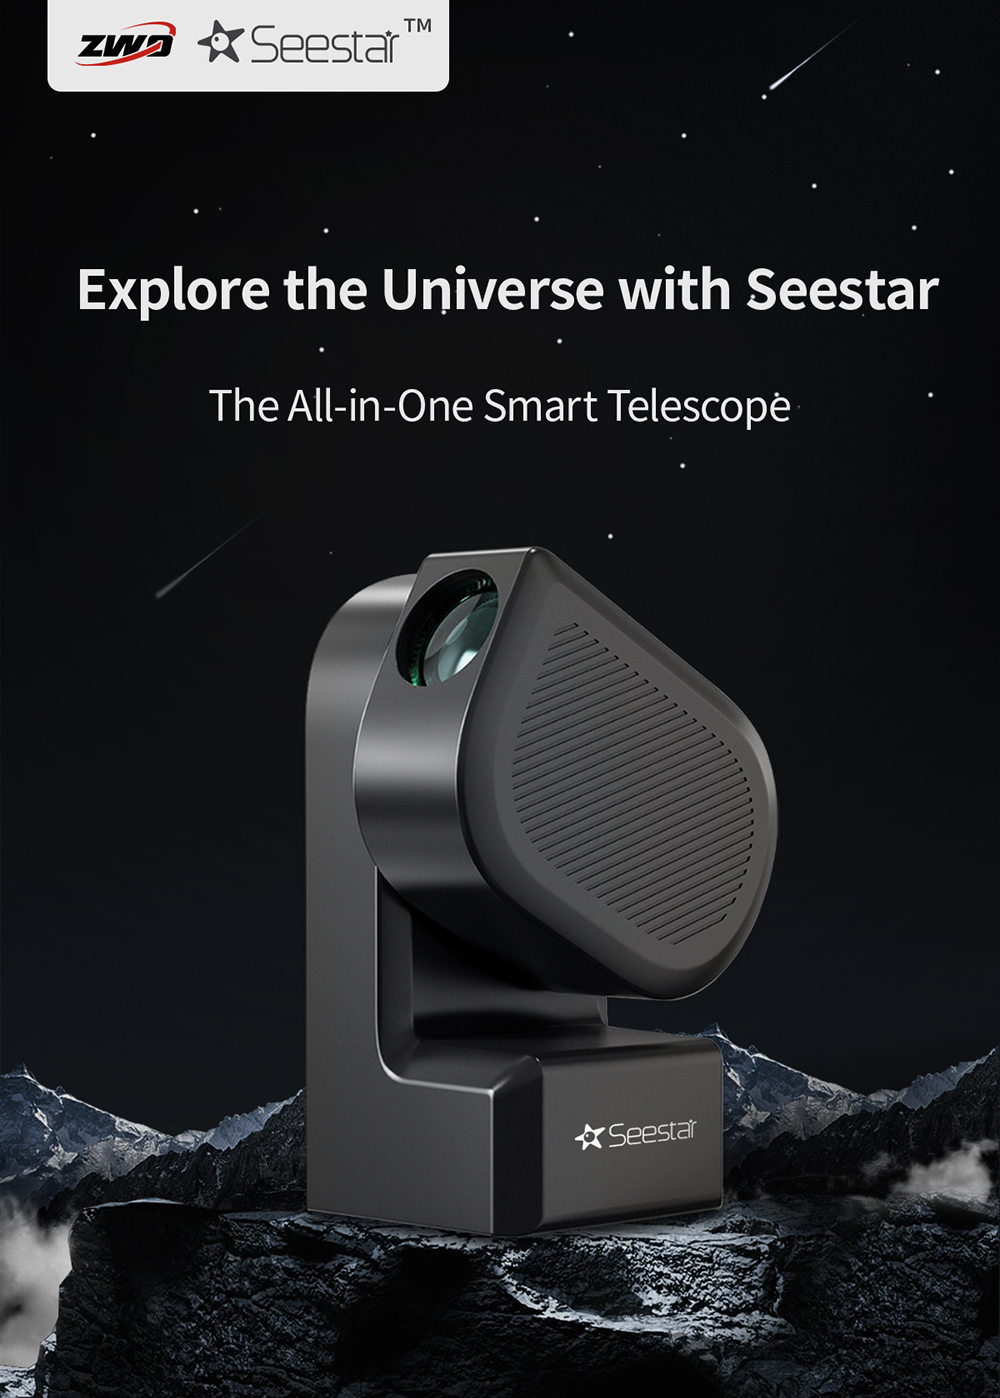 ZWO SeeStar S50 All-In-One Smart Telescope